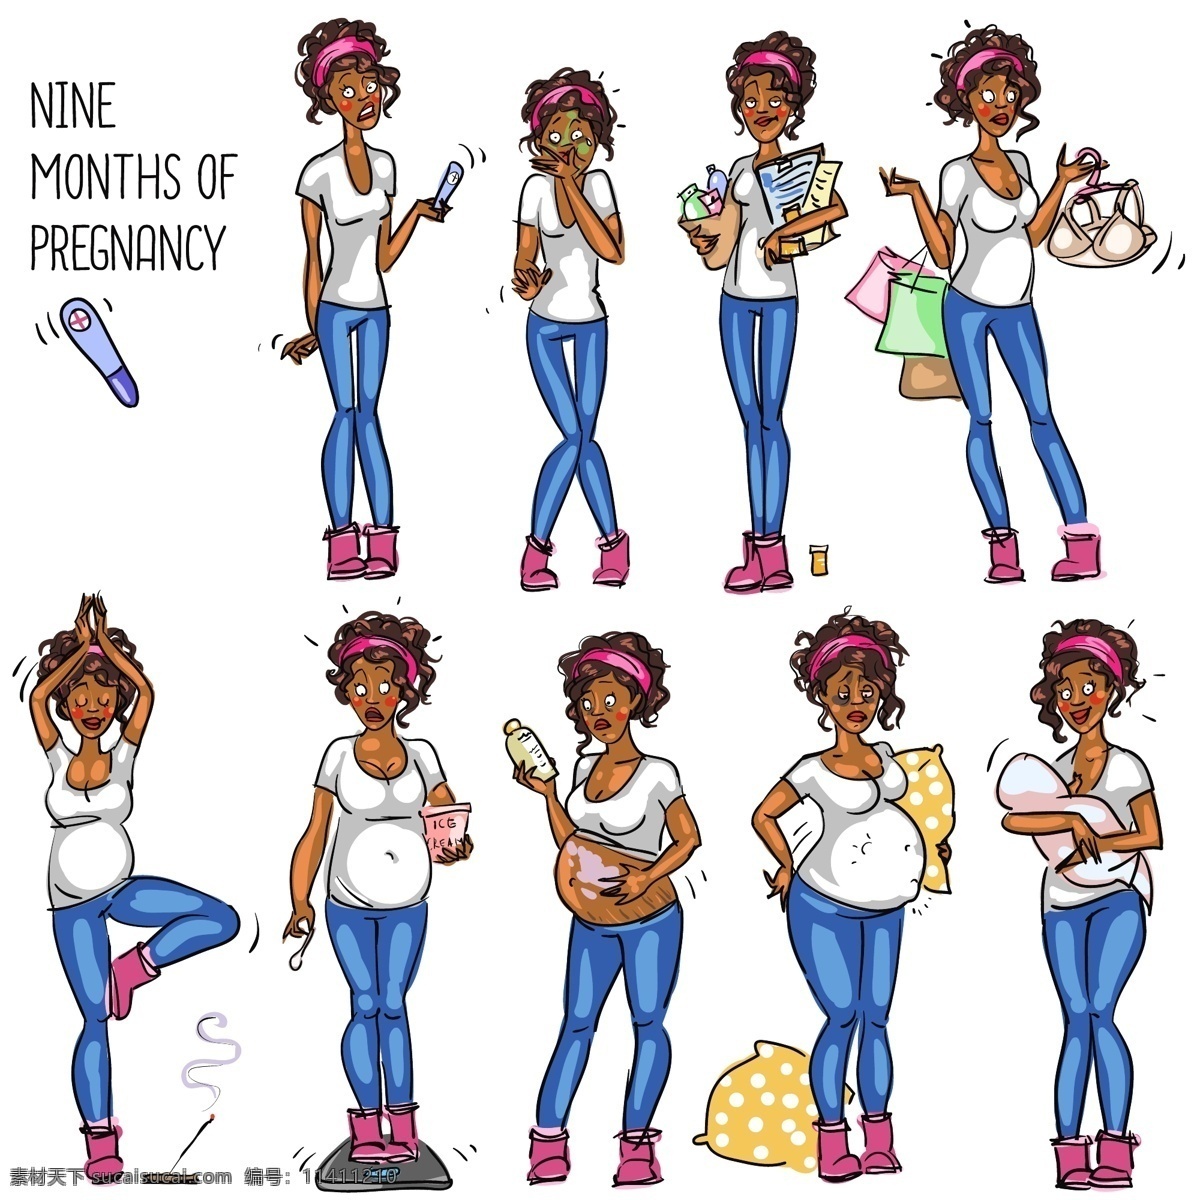 女性生活漫画 节食 减肥 瑜伽 运动 健身 时尚女性插画 卡通美女漫画 卡通人物漫画 手绘人物插图 怀孕 孕妇 日常生活 矢量人物 矢量素材